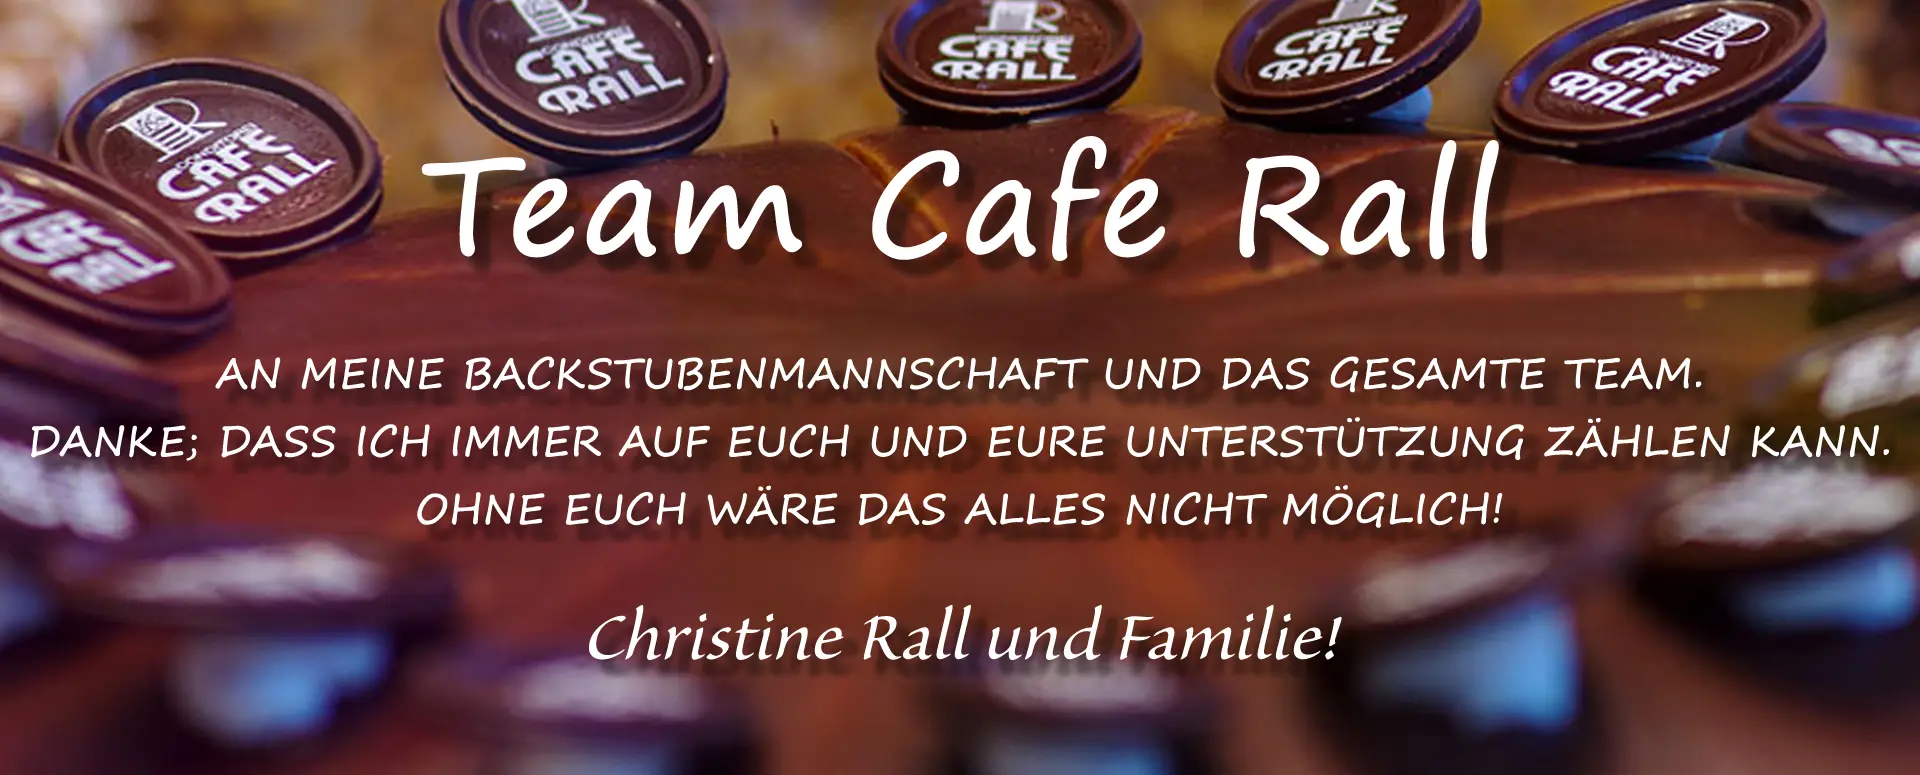 Team Cafe Rall in Viernheim